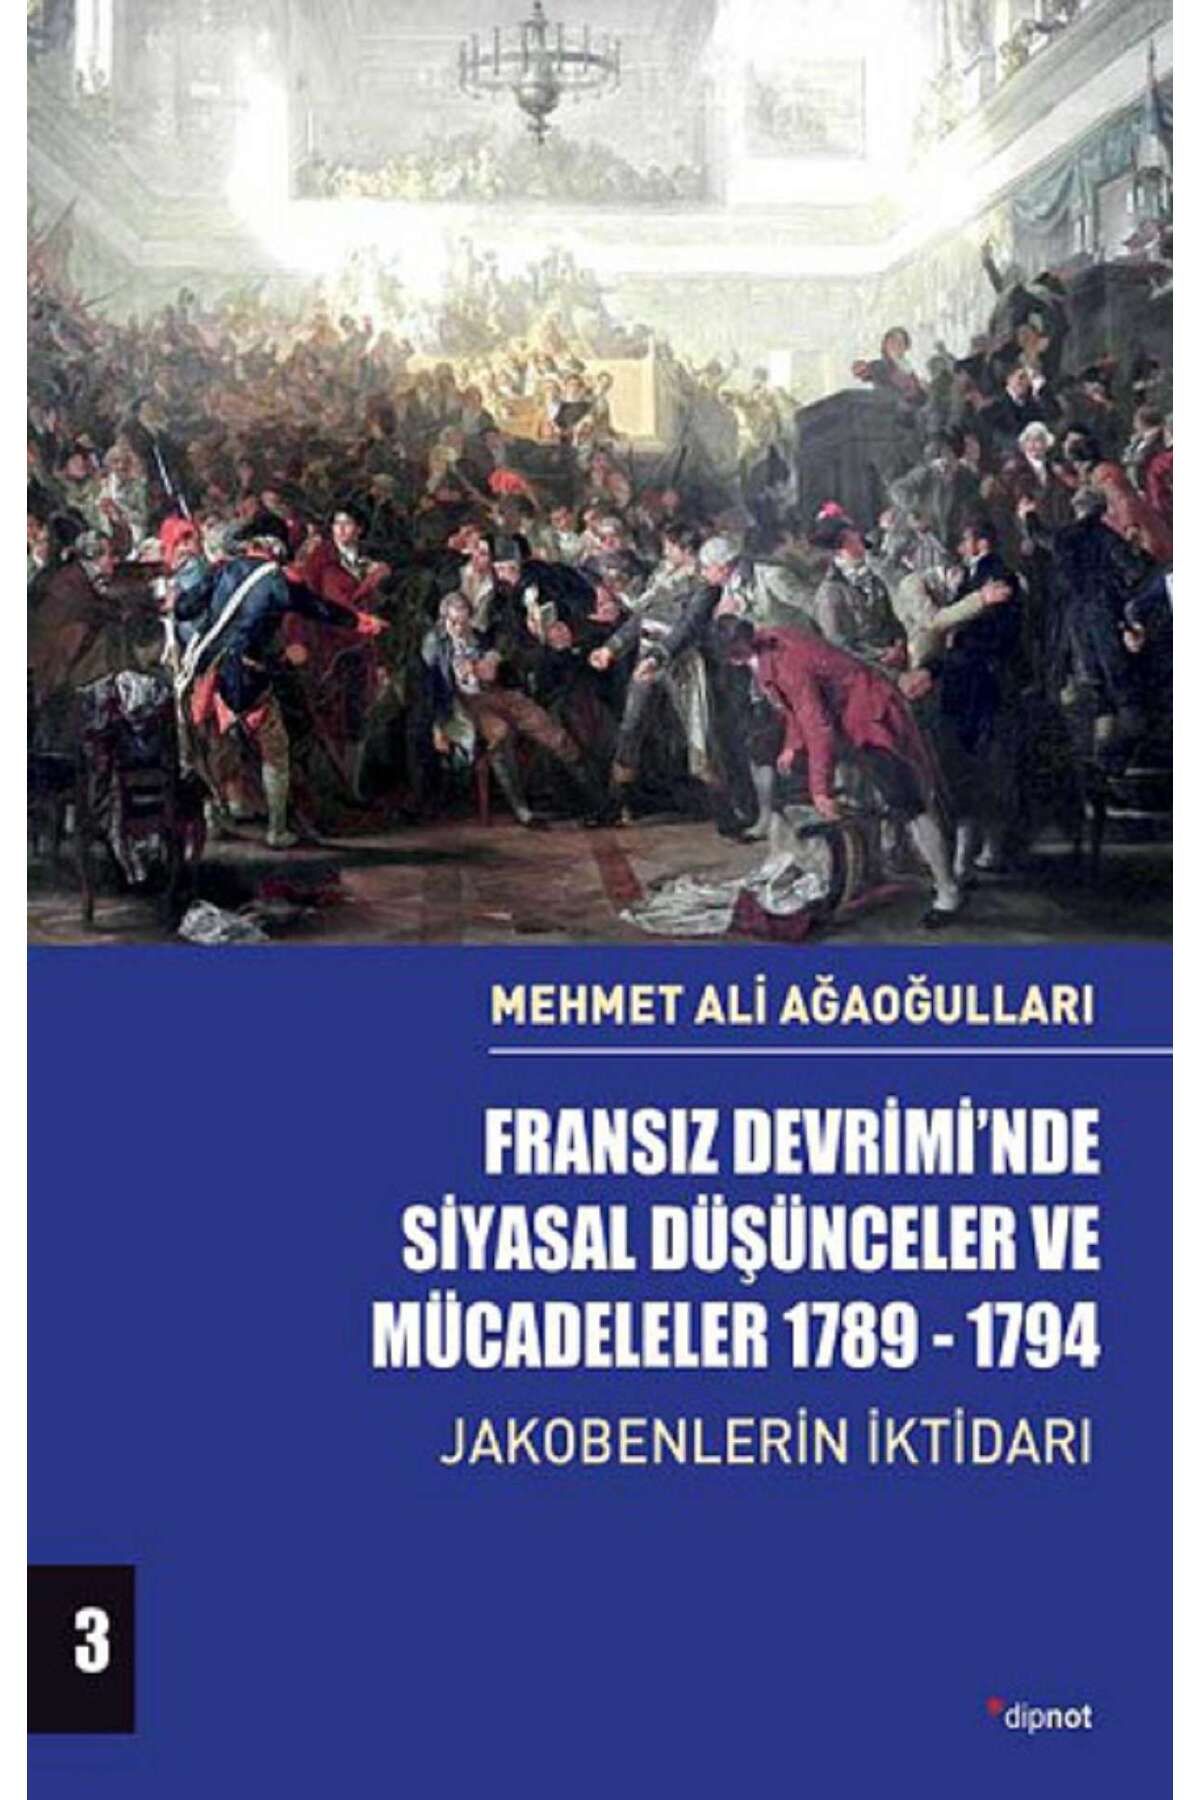 Dipnot Yayınları Fransız Devrimi'nde Siyasal Düşünceler Ve Mücadeleler - Cilt 3